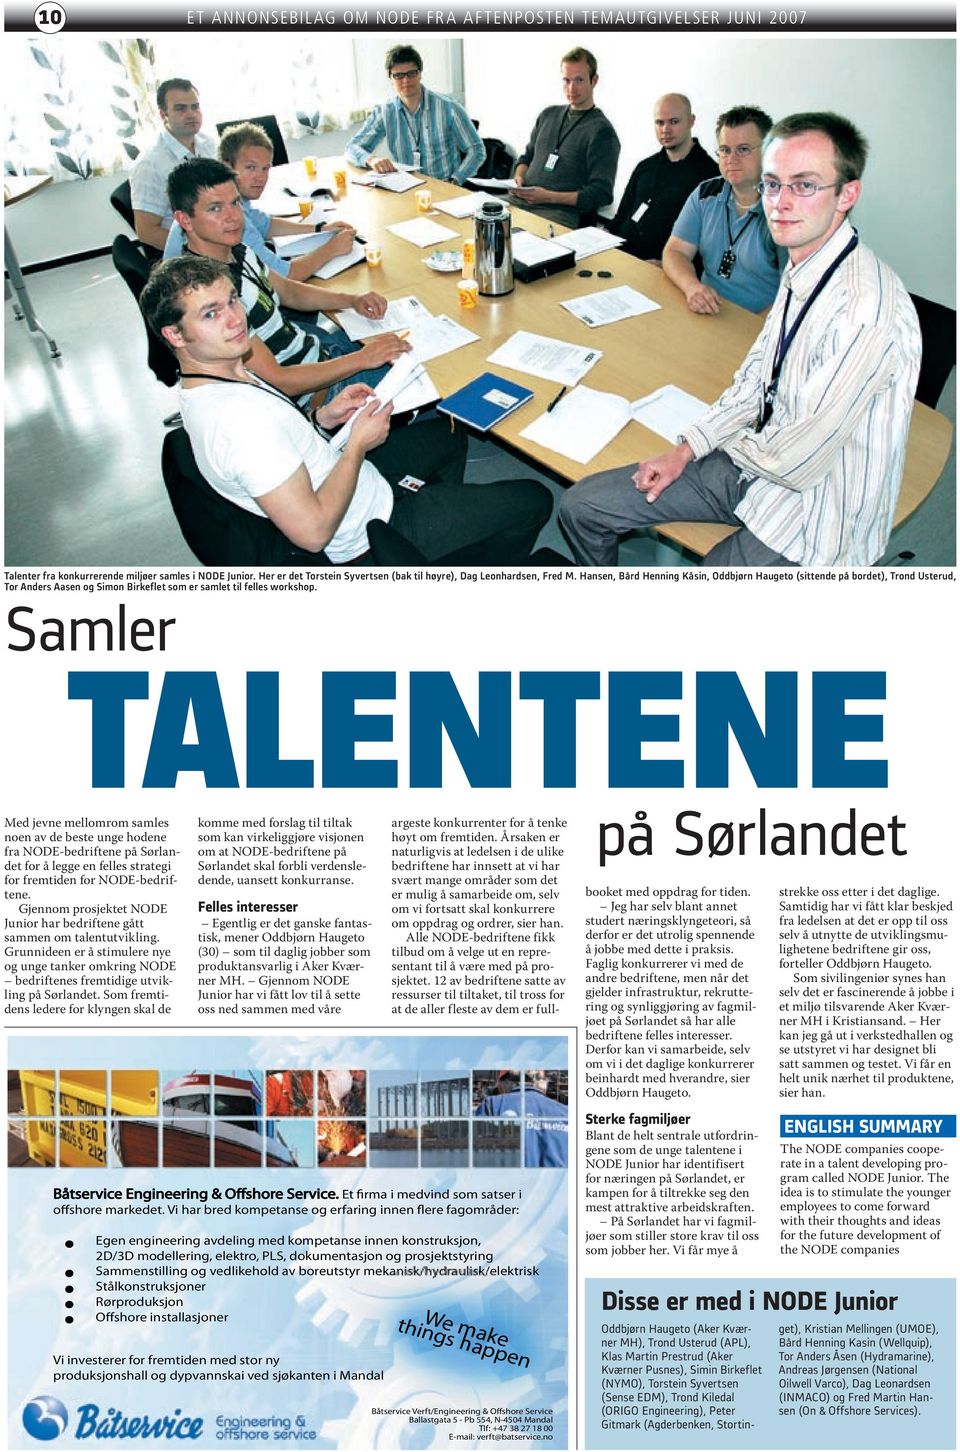 Samler TALENTENE Med jevne mellomrom samles noen av de beste unge hodene fra NODE-bedriftene på Sørlandet for å legge en felles strategi for fremtiden for NODE-bedriftene.